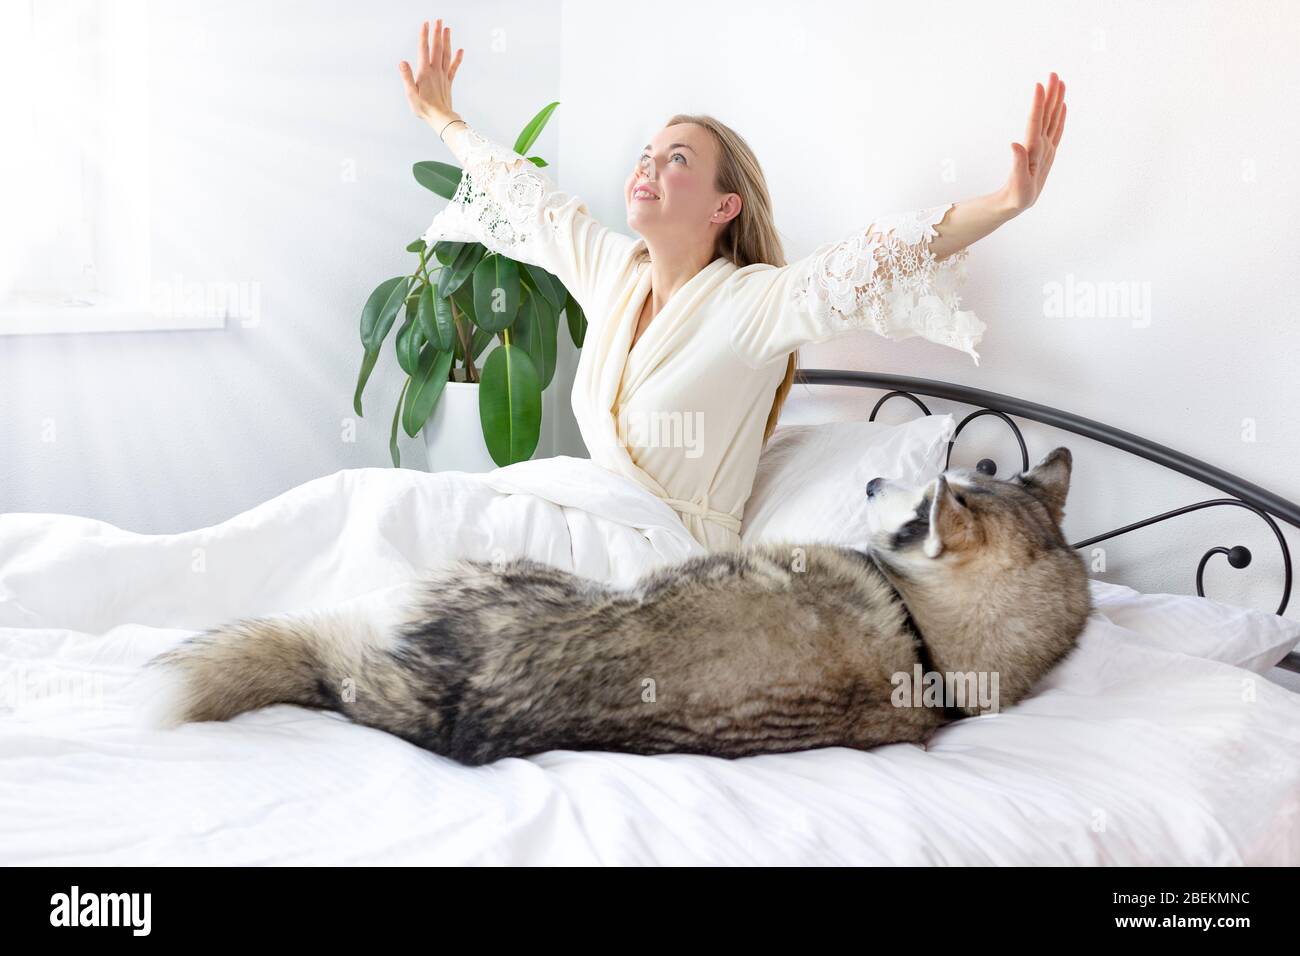 Junge lächelnde Frau mit blondem Haar in leichter Kleidung liegt auf einem weißen Bett mit einem Haustier. Verbringt Zeit zu Hause mit ihrem Hund der sibirischen Husky-Rasse. l Stockfoto